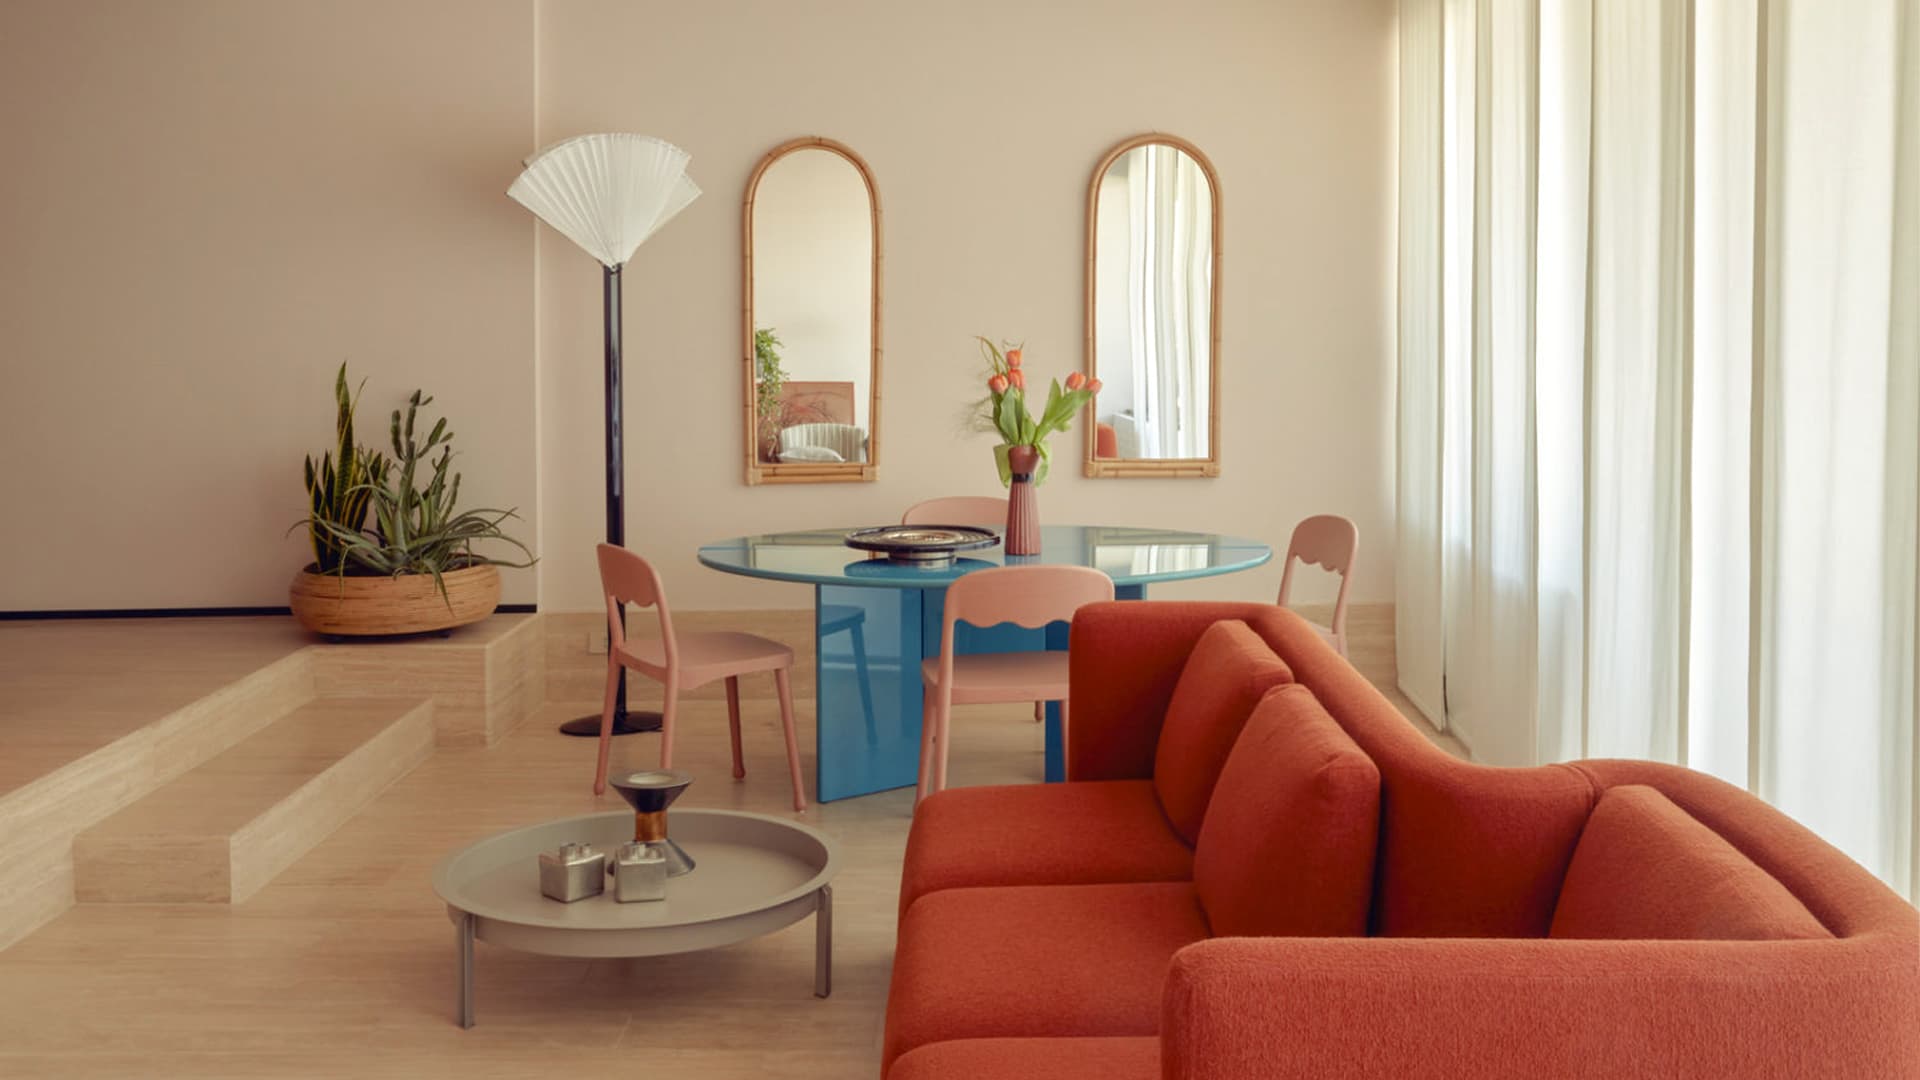 Свежий микс теплых оттенков в интерьере итальянской квартиры – проект Кристины Челестино